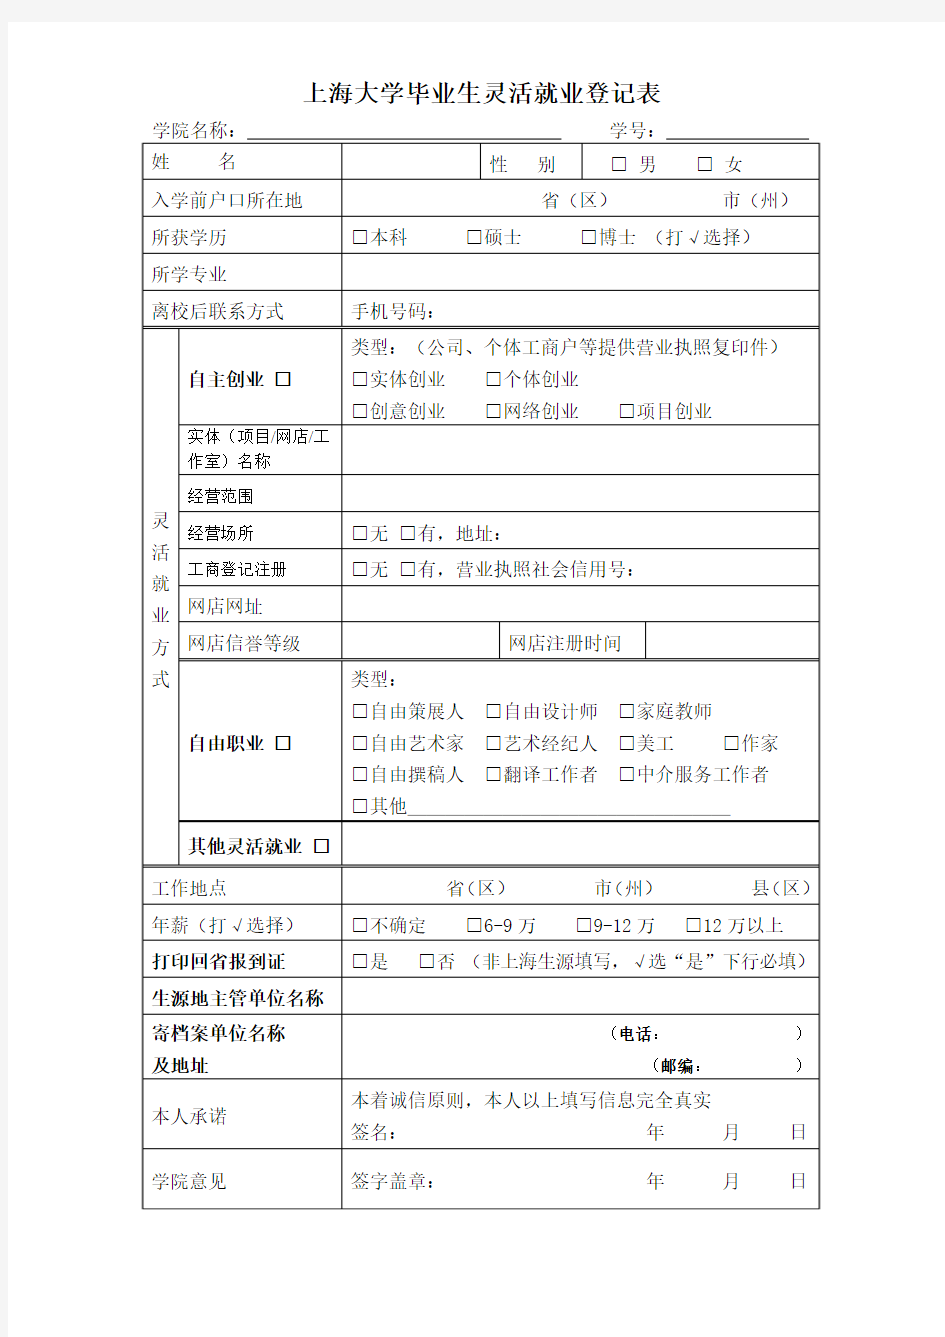 上海大学毕业生灵活就业登记表